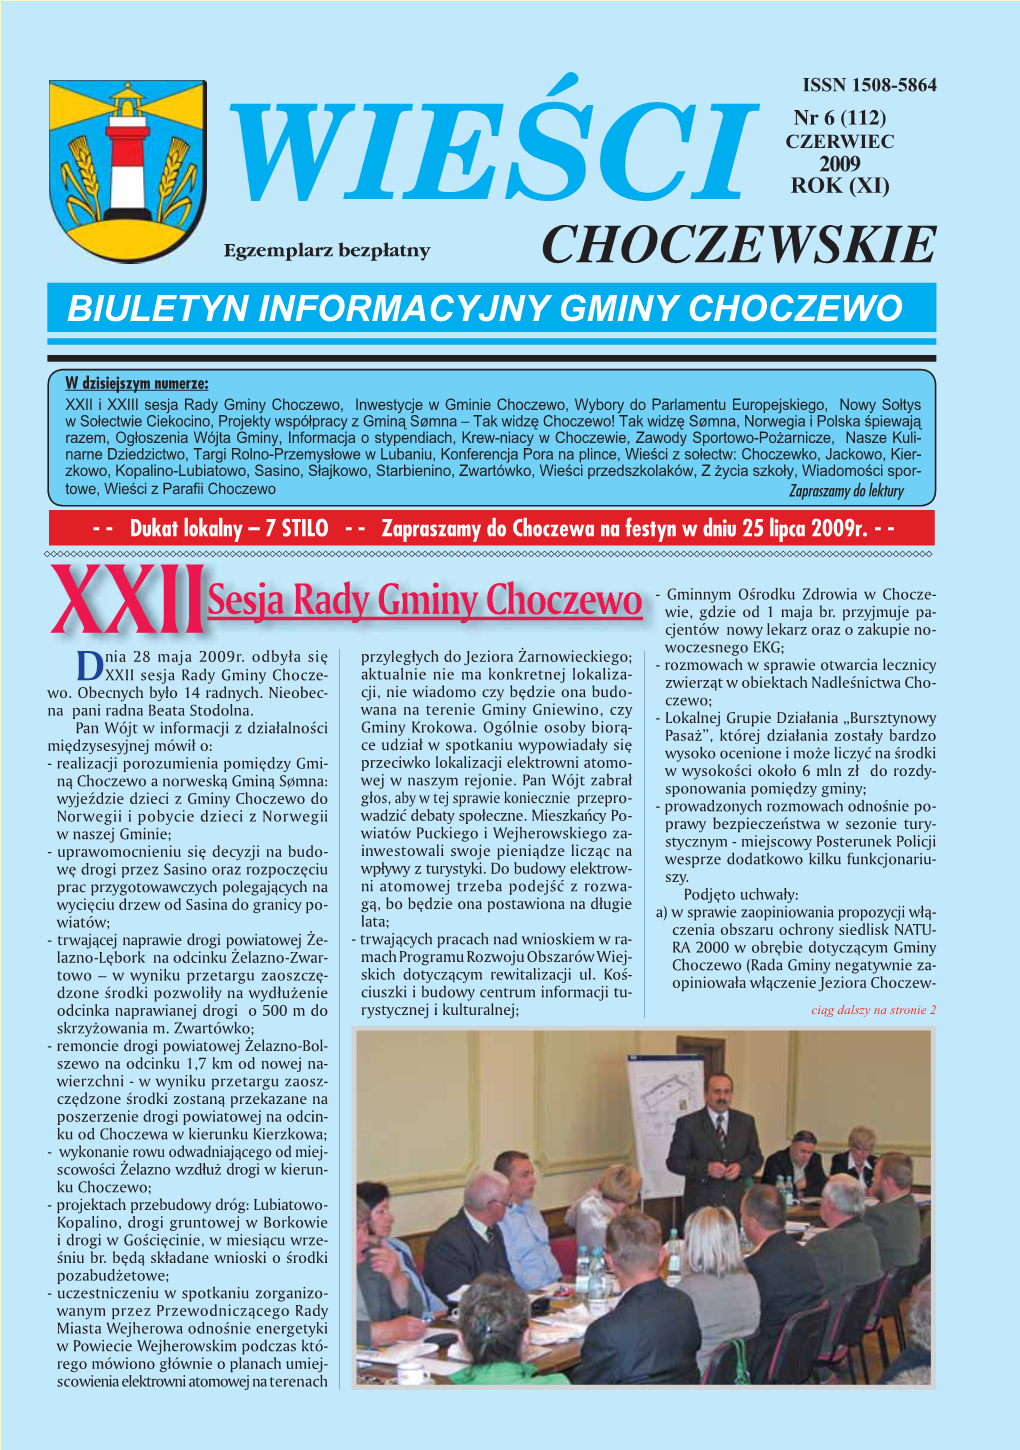 Wieści Choczewskie Nr 6 (112) CZERWIEC 2009 ISSN 1508-5864S